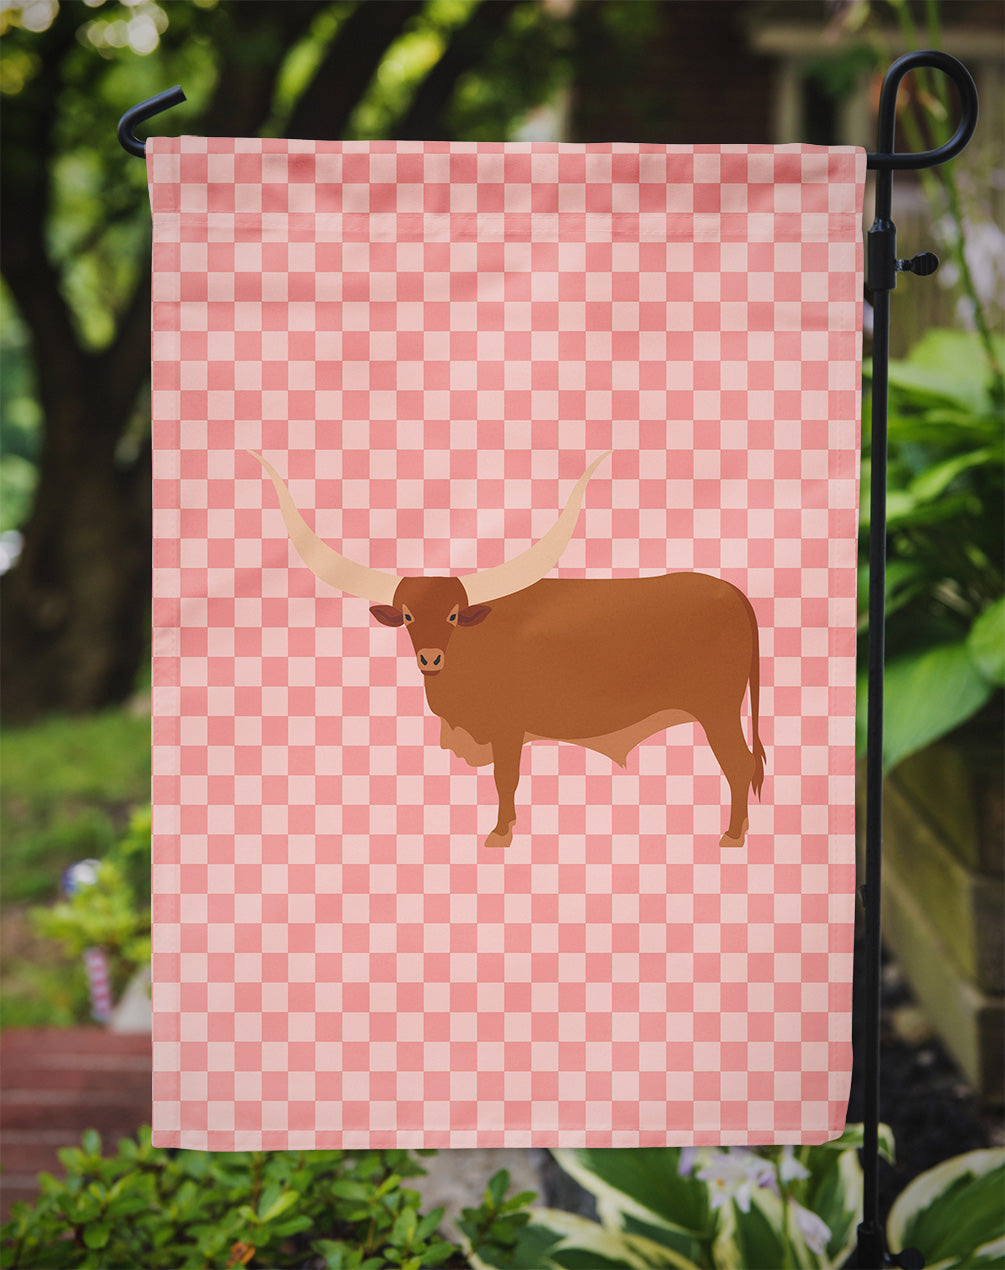 Ankole-Watusu Cow Pink Check Flag Garden Size